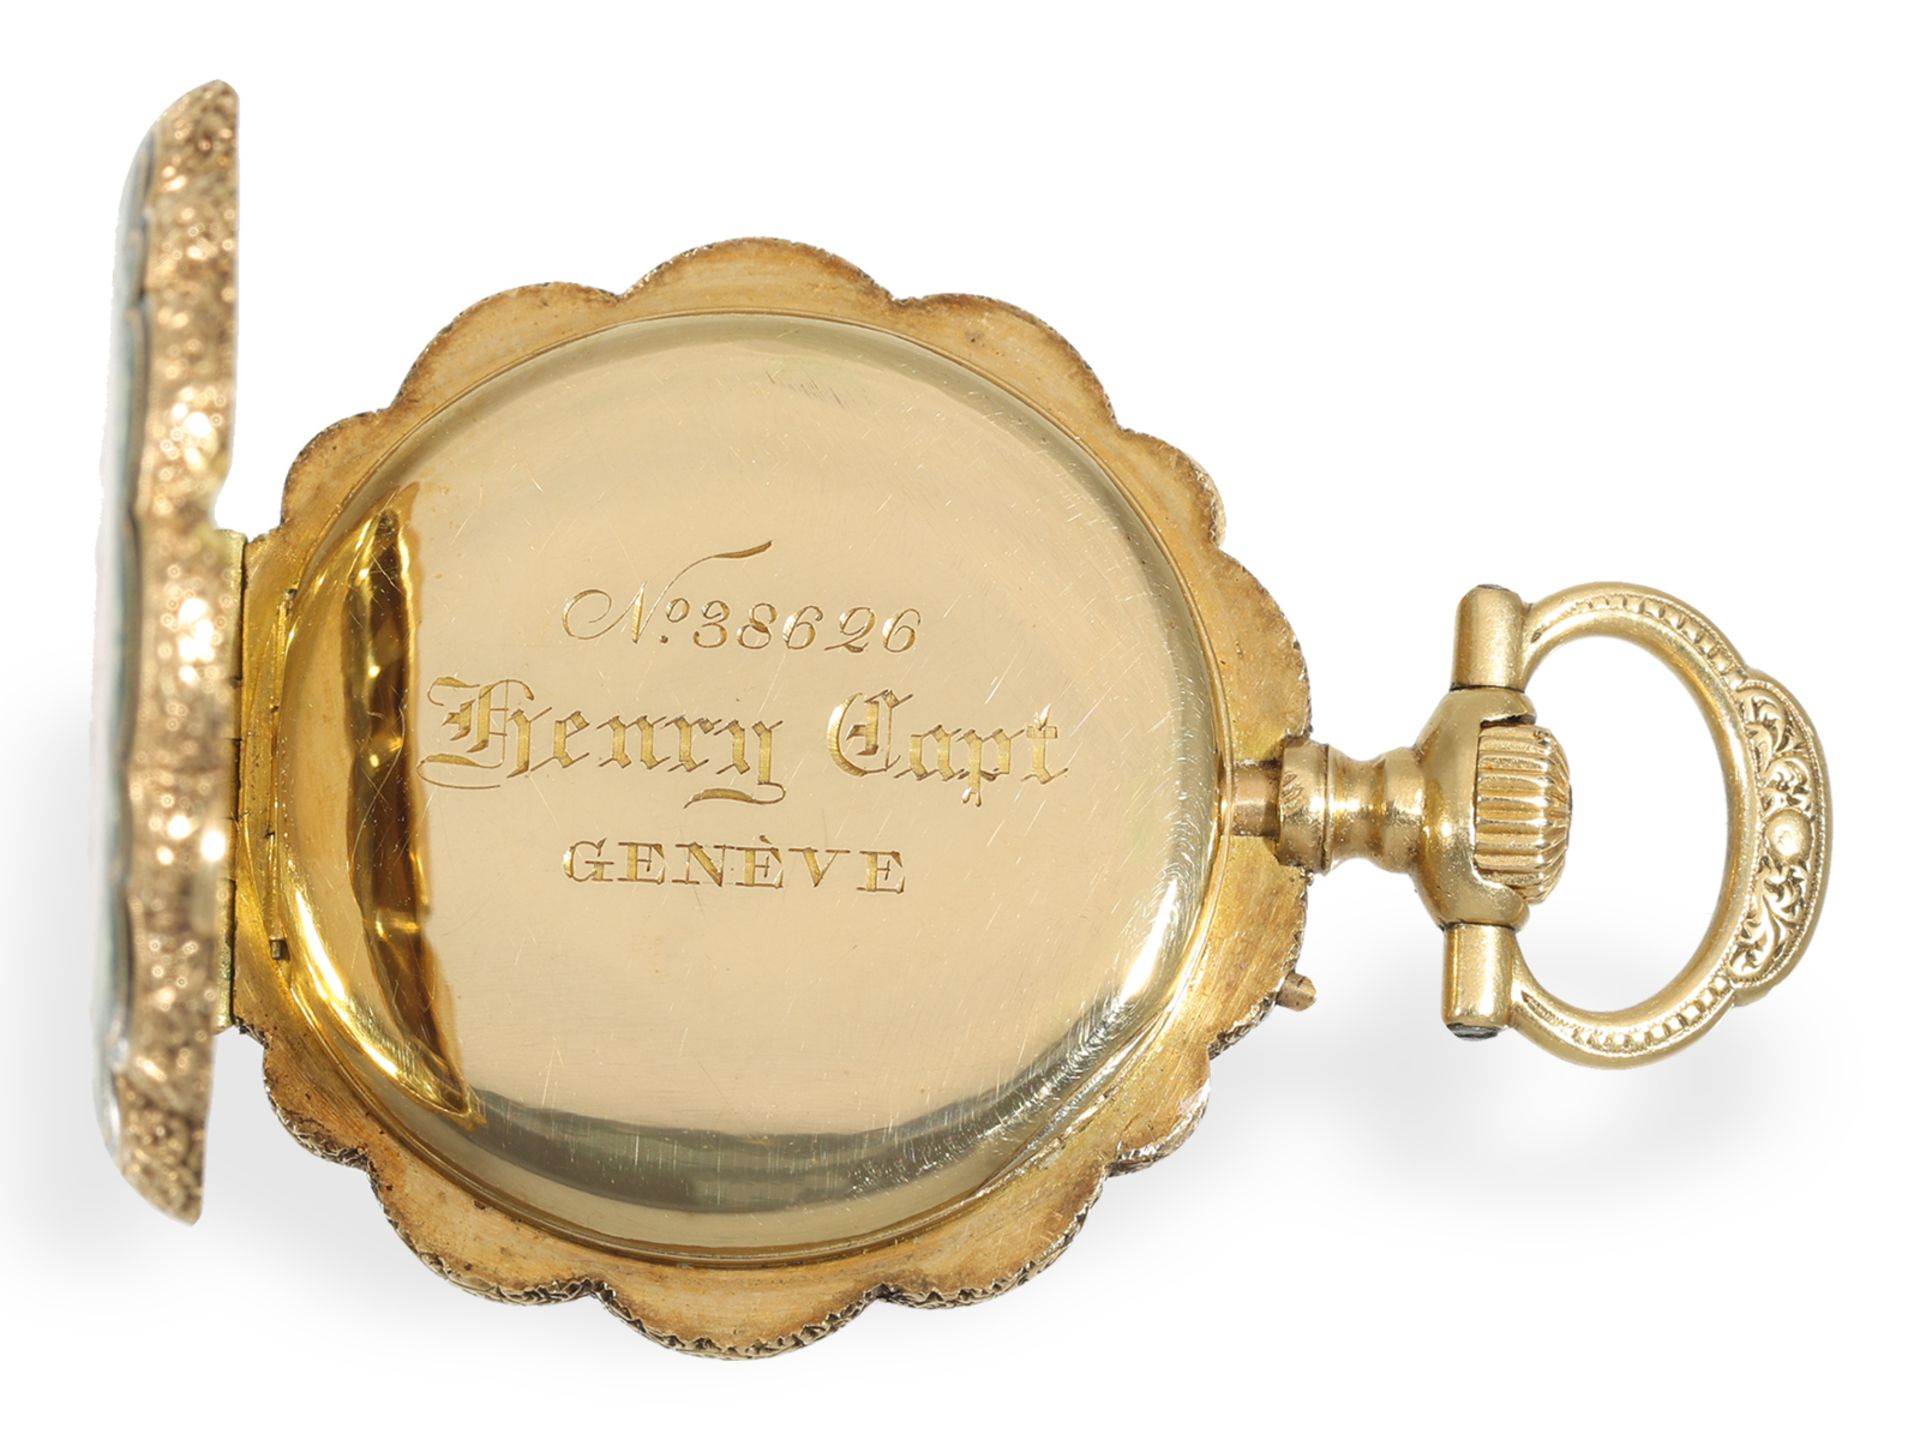 Taschenuhr: exquisite Gold/Emaille Damenuhr für den indischen Markt, Henry Capt Geneve um 1880 - Bild 3 aus 6